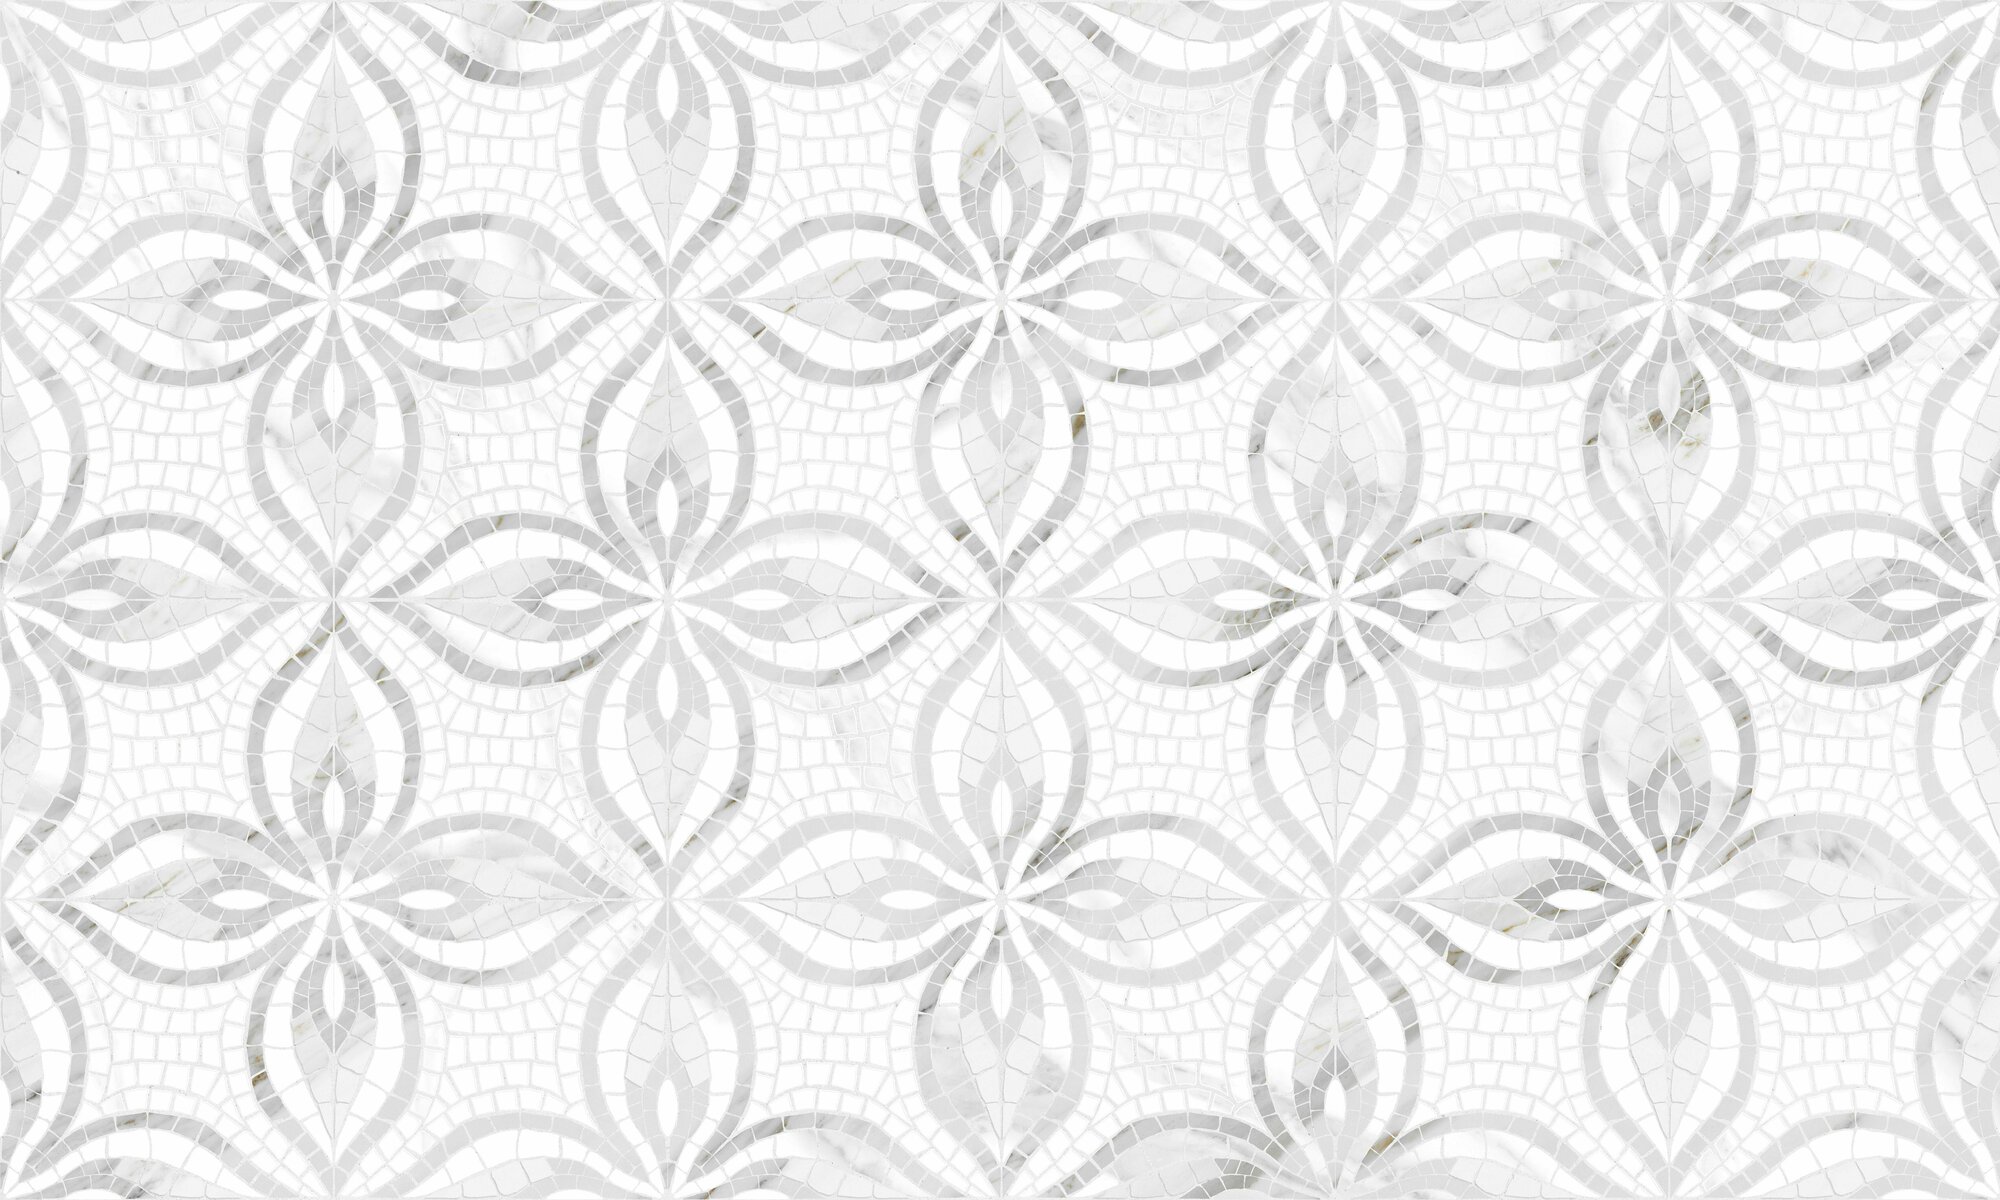 Керамическая плитка Gracia Ceramica RIBEIRA белые цветы 30х50 см